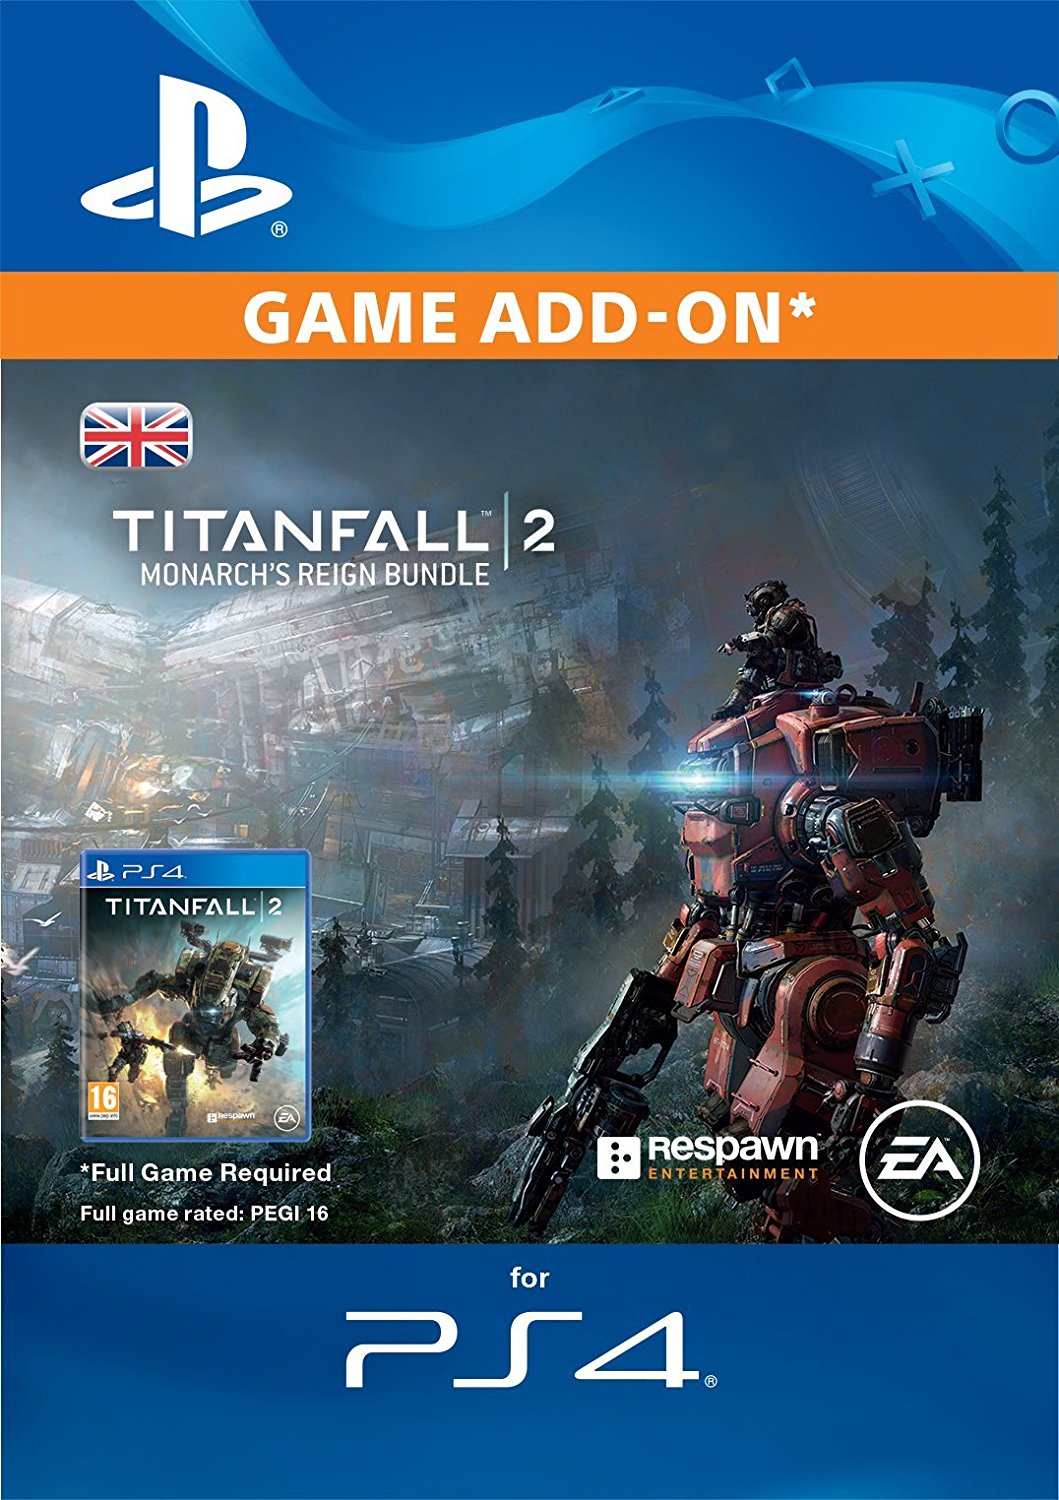 Titanfall 2 Monarch's Reign Bundle Edition DLC Digital Copy CD Key (Playstation 4) - UK REGION ONLY